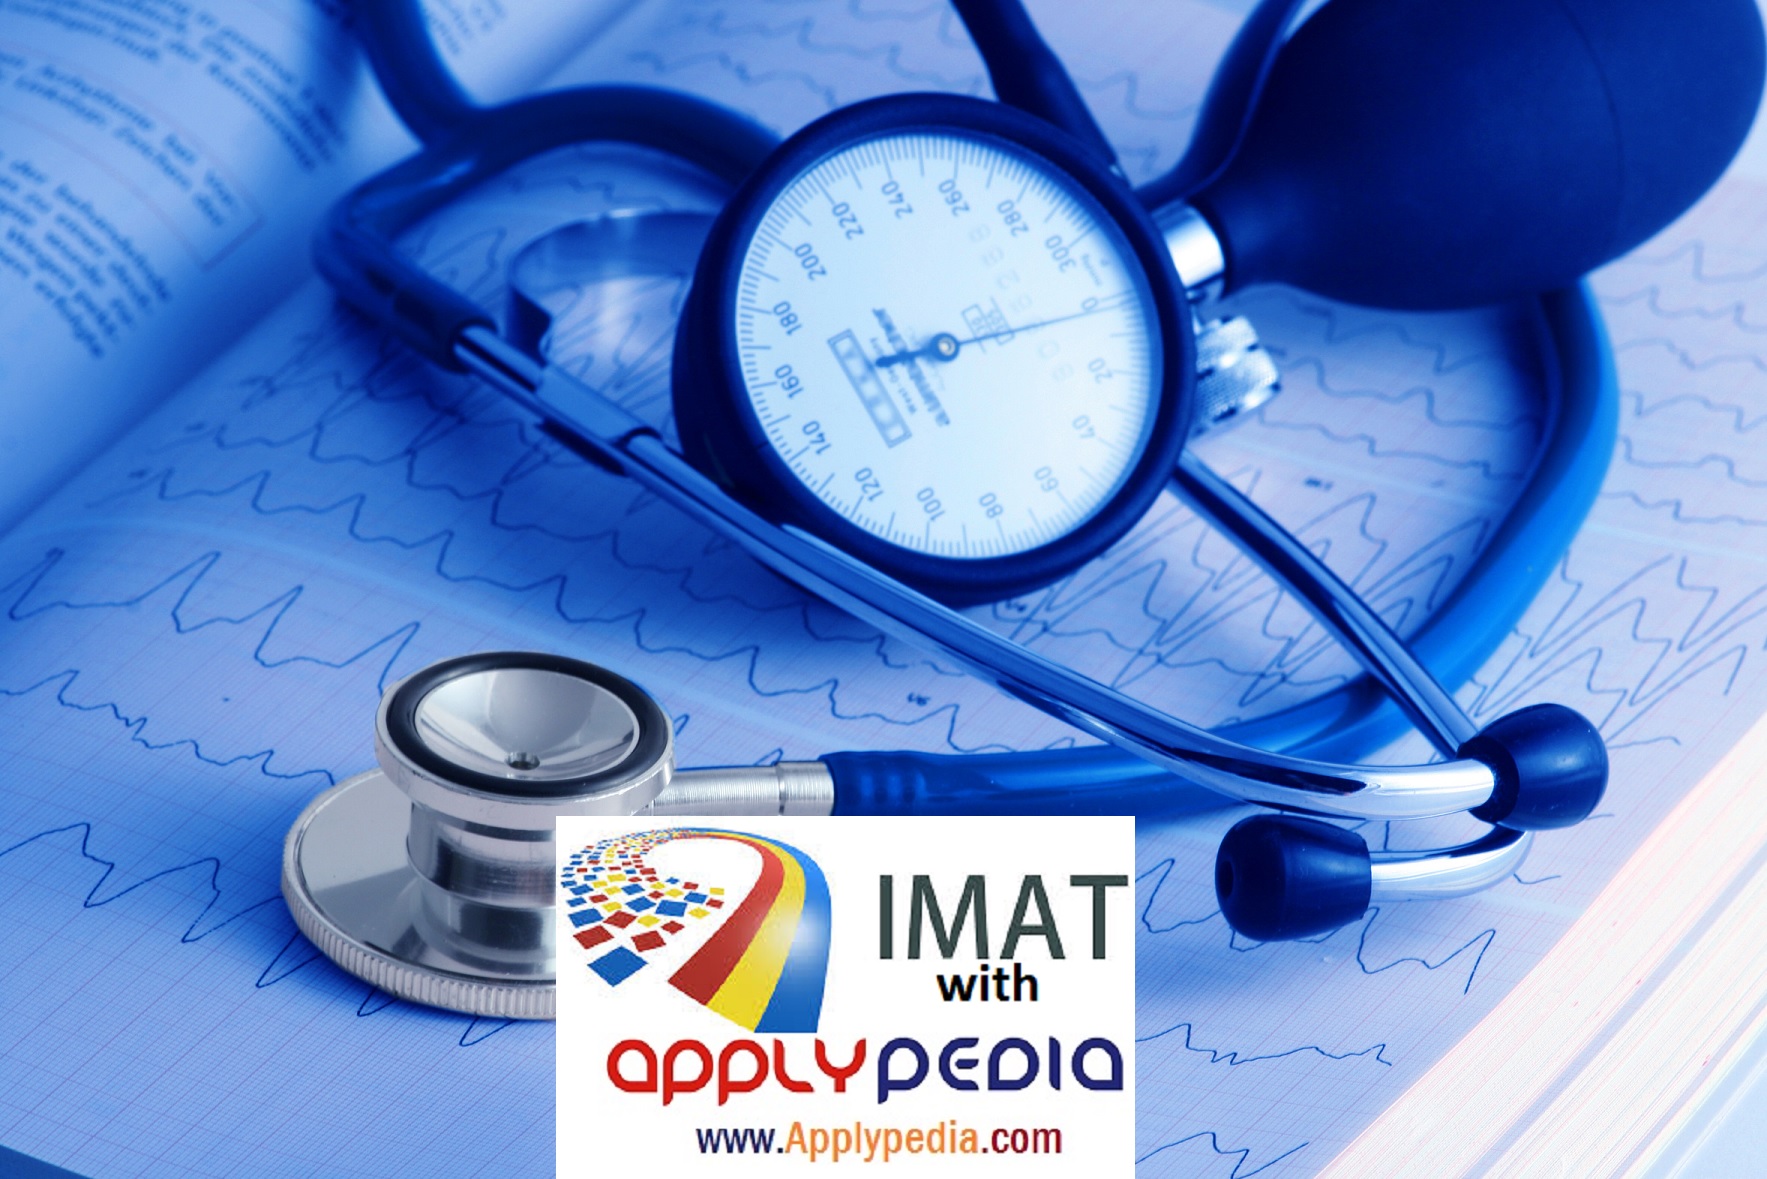 تقویم آموزشی دانشگاه های پزشکی ایتالیا و آزمون IMAT در سال ۲۰۱۸